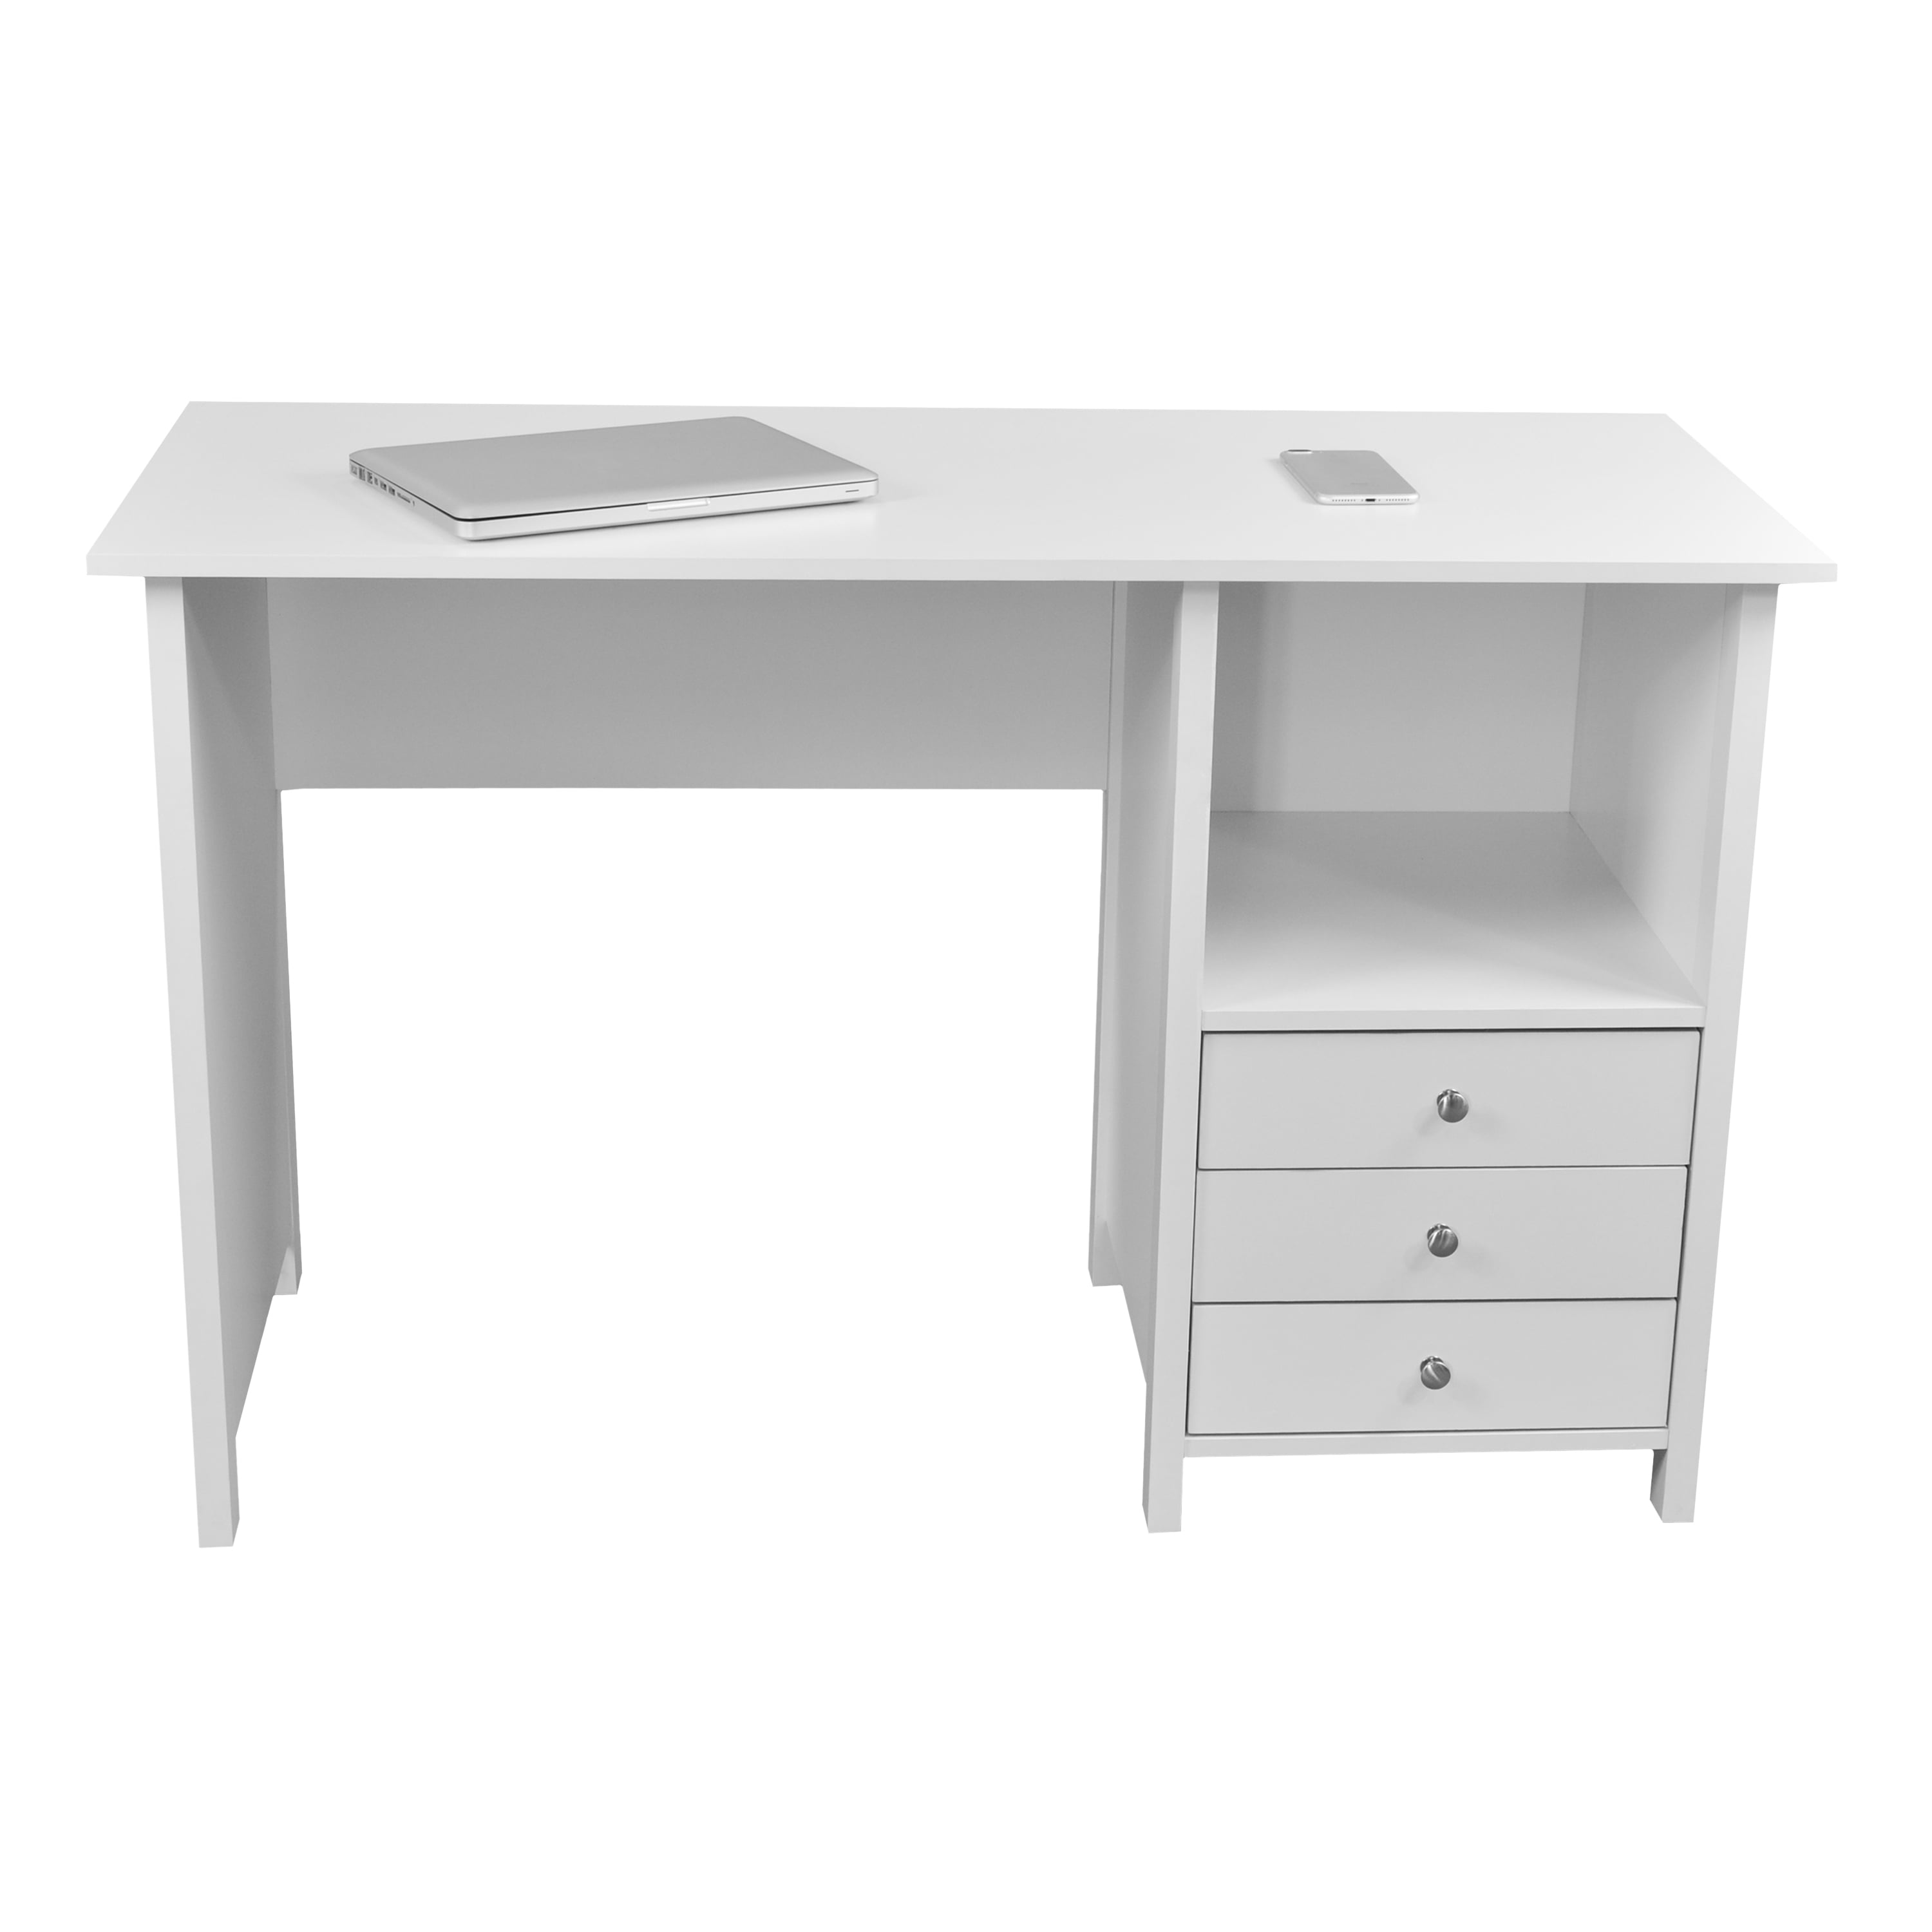 Techni Mobili Contempo Desk With 3 Storage Drawers White